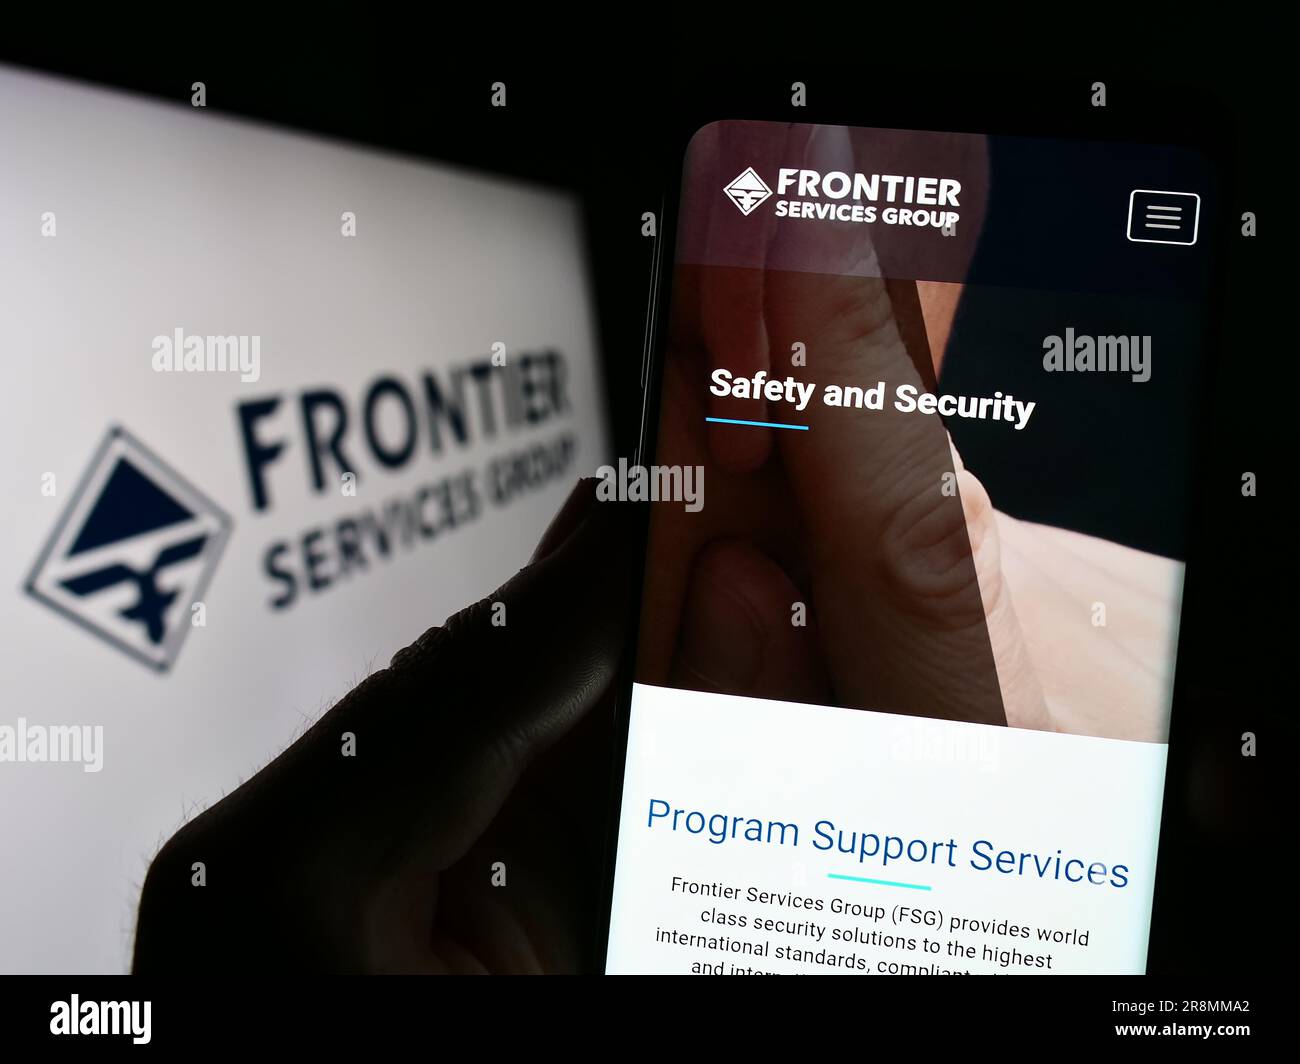 Personne détenant un smartphone avec le site Web de la société Frontier Services Group Limited (FSG) à l'écran avec logo. Concentrez-vous sur le centre de l'écran du téléphone. Banque D'Images